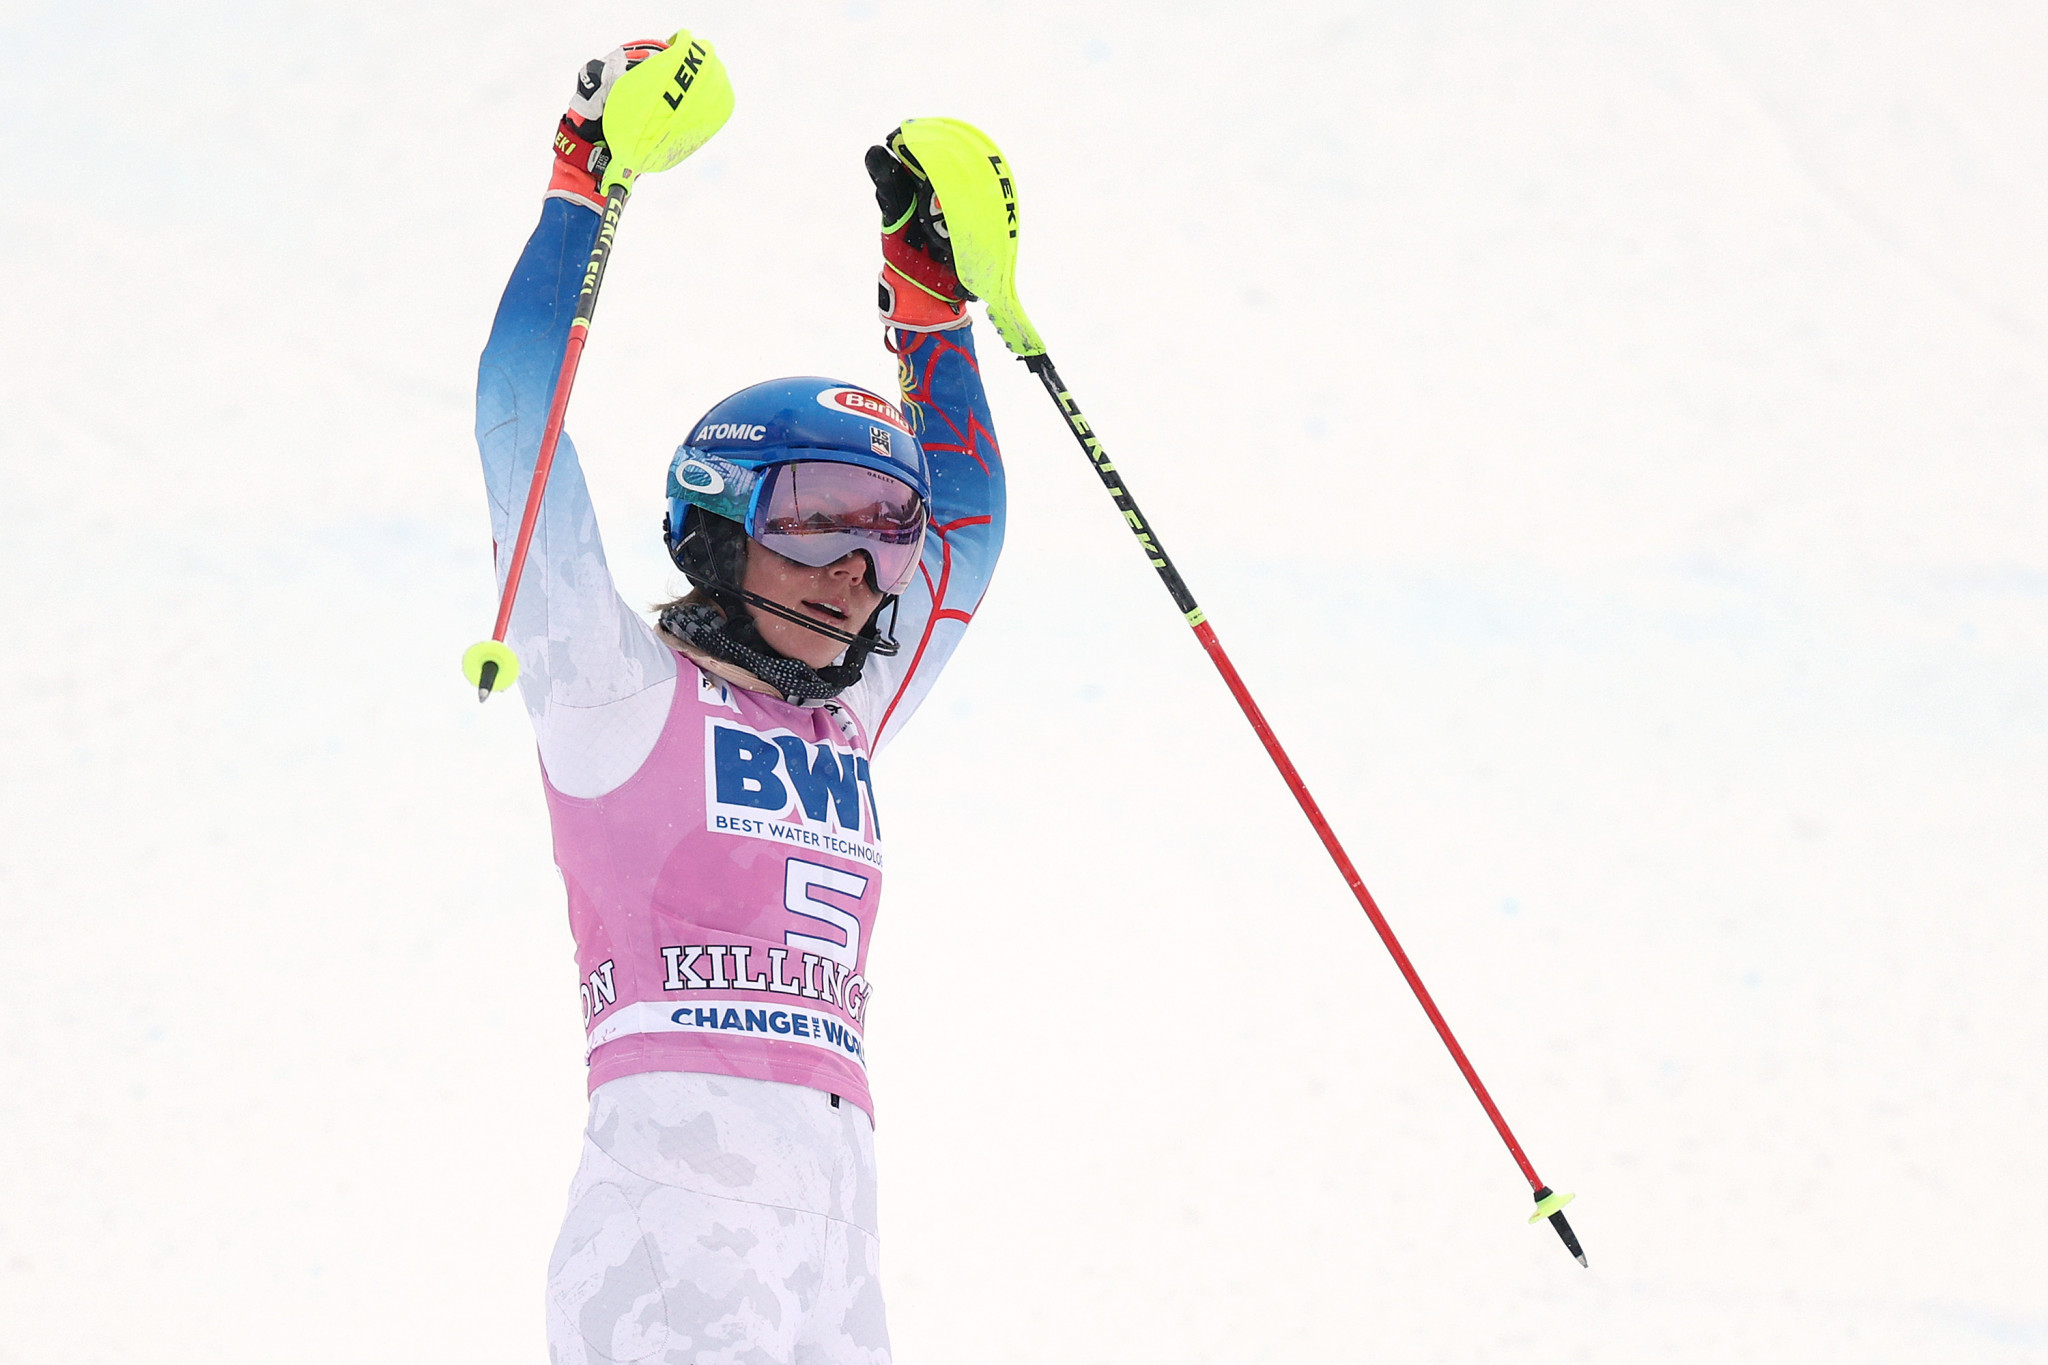 Shiffrin victorious in Killington slalom in women's FIS Alpine Ski World Cup